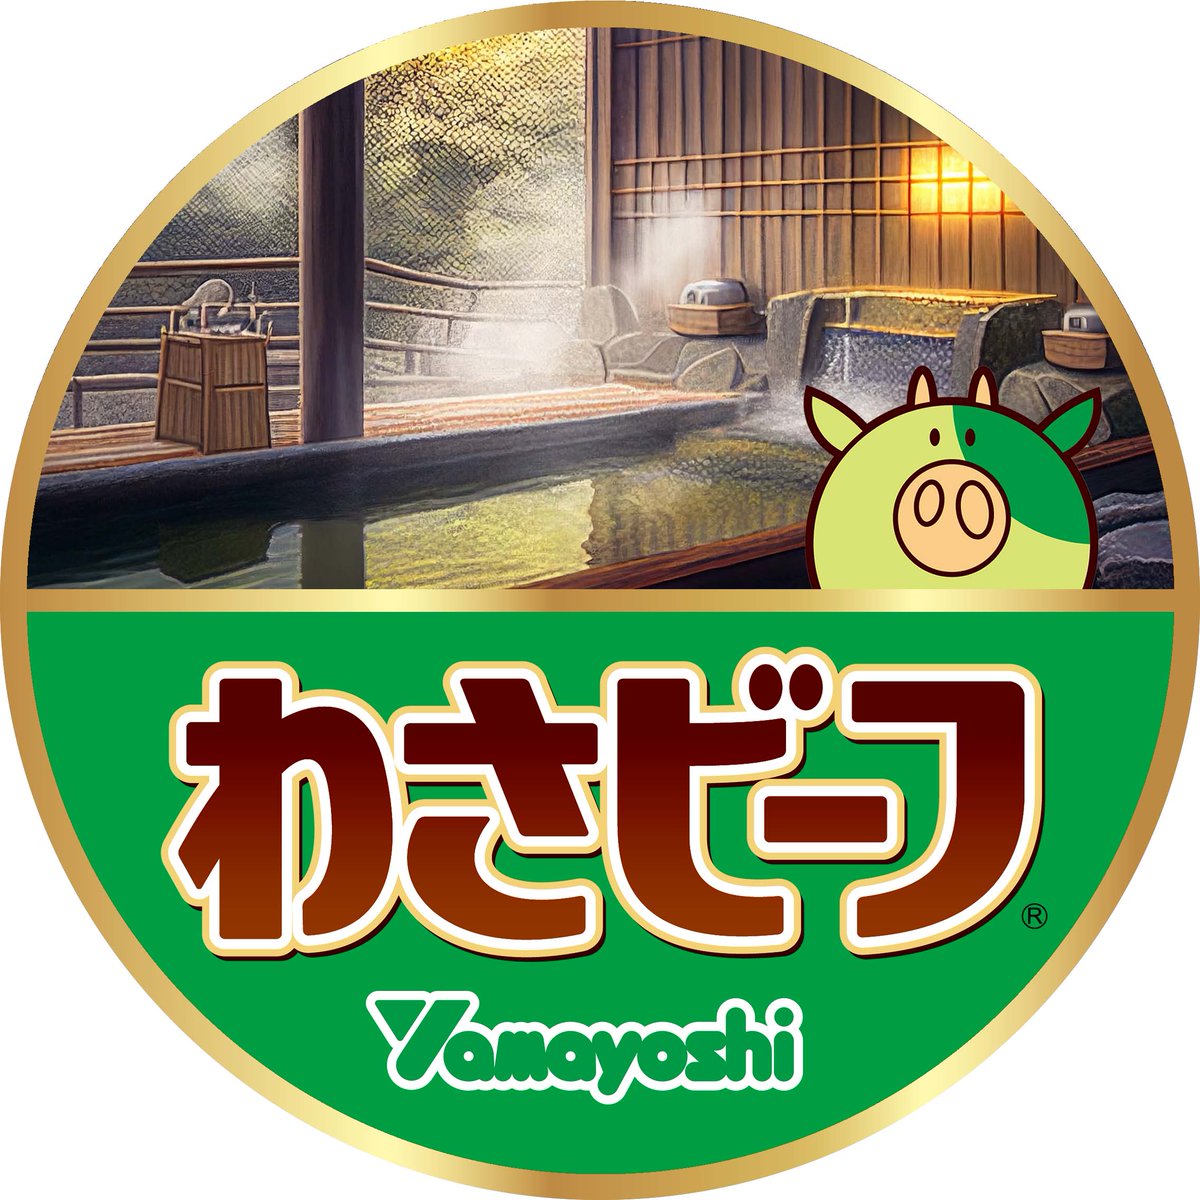 今日のアイコンは、日本入浴協会・よい風呂の日と風呂の日（毎月26日）にちなんだイメージです。

#今日の山芳アイコン